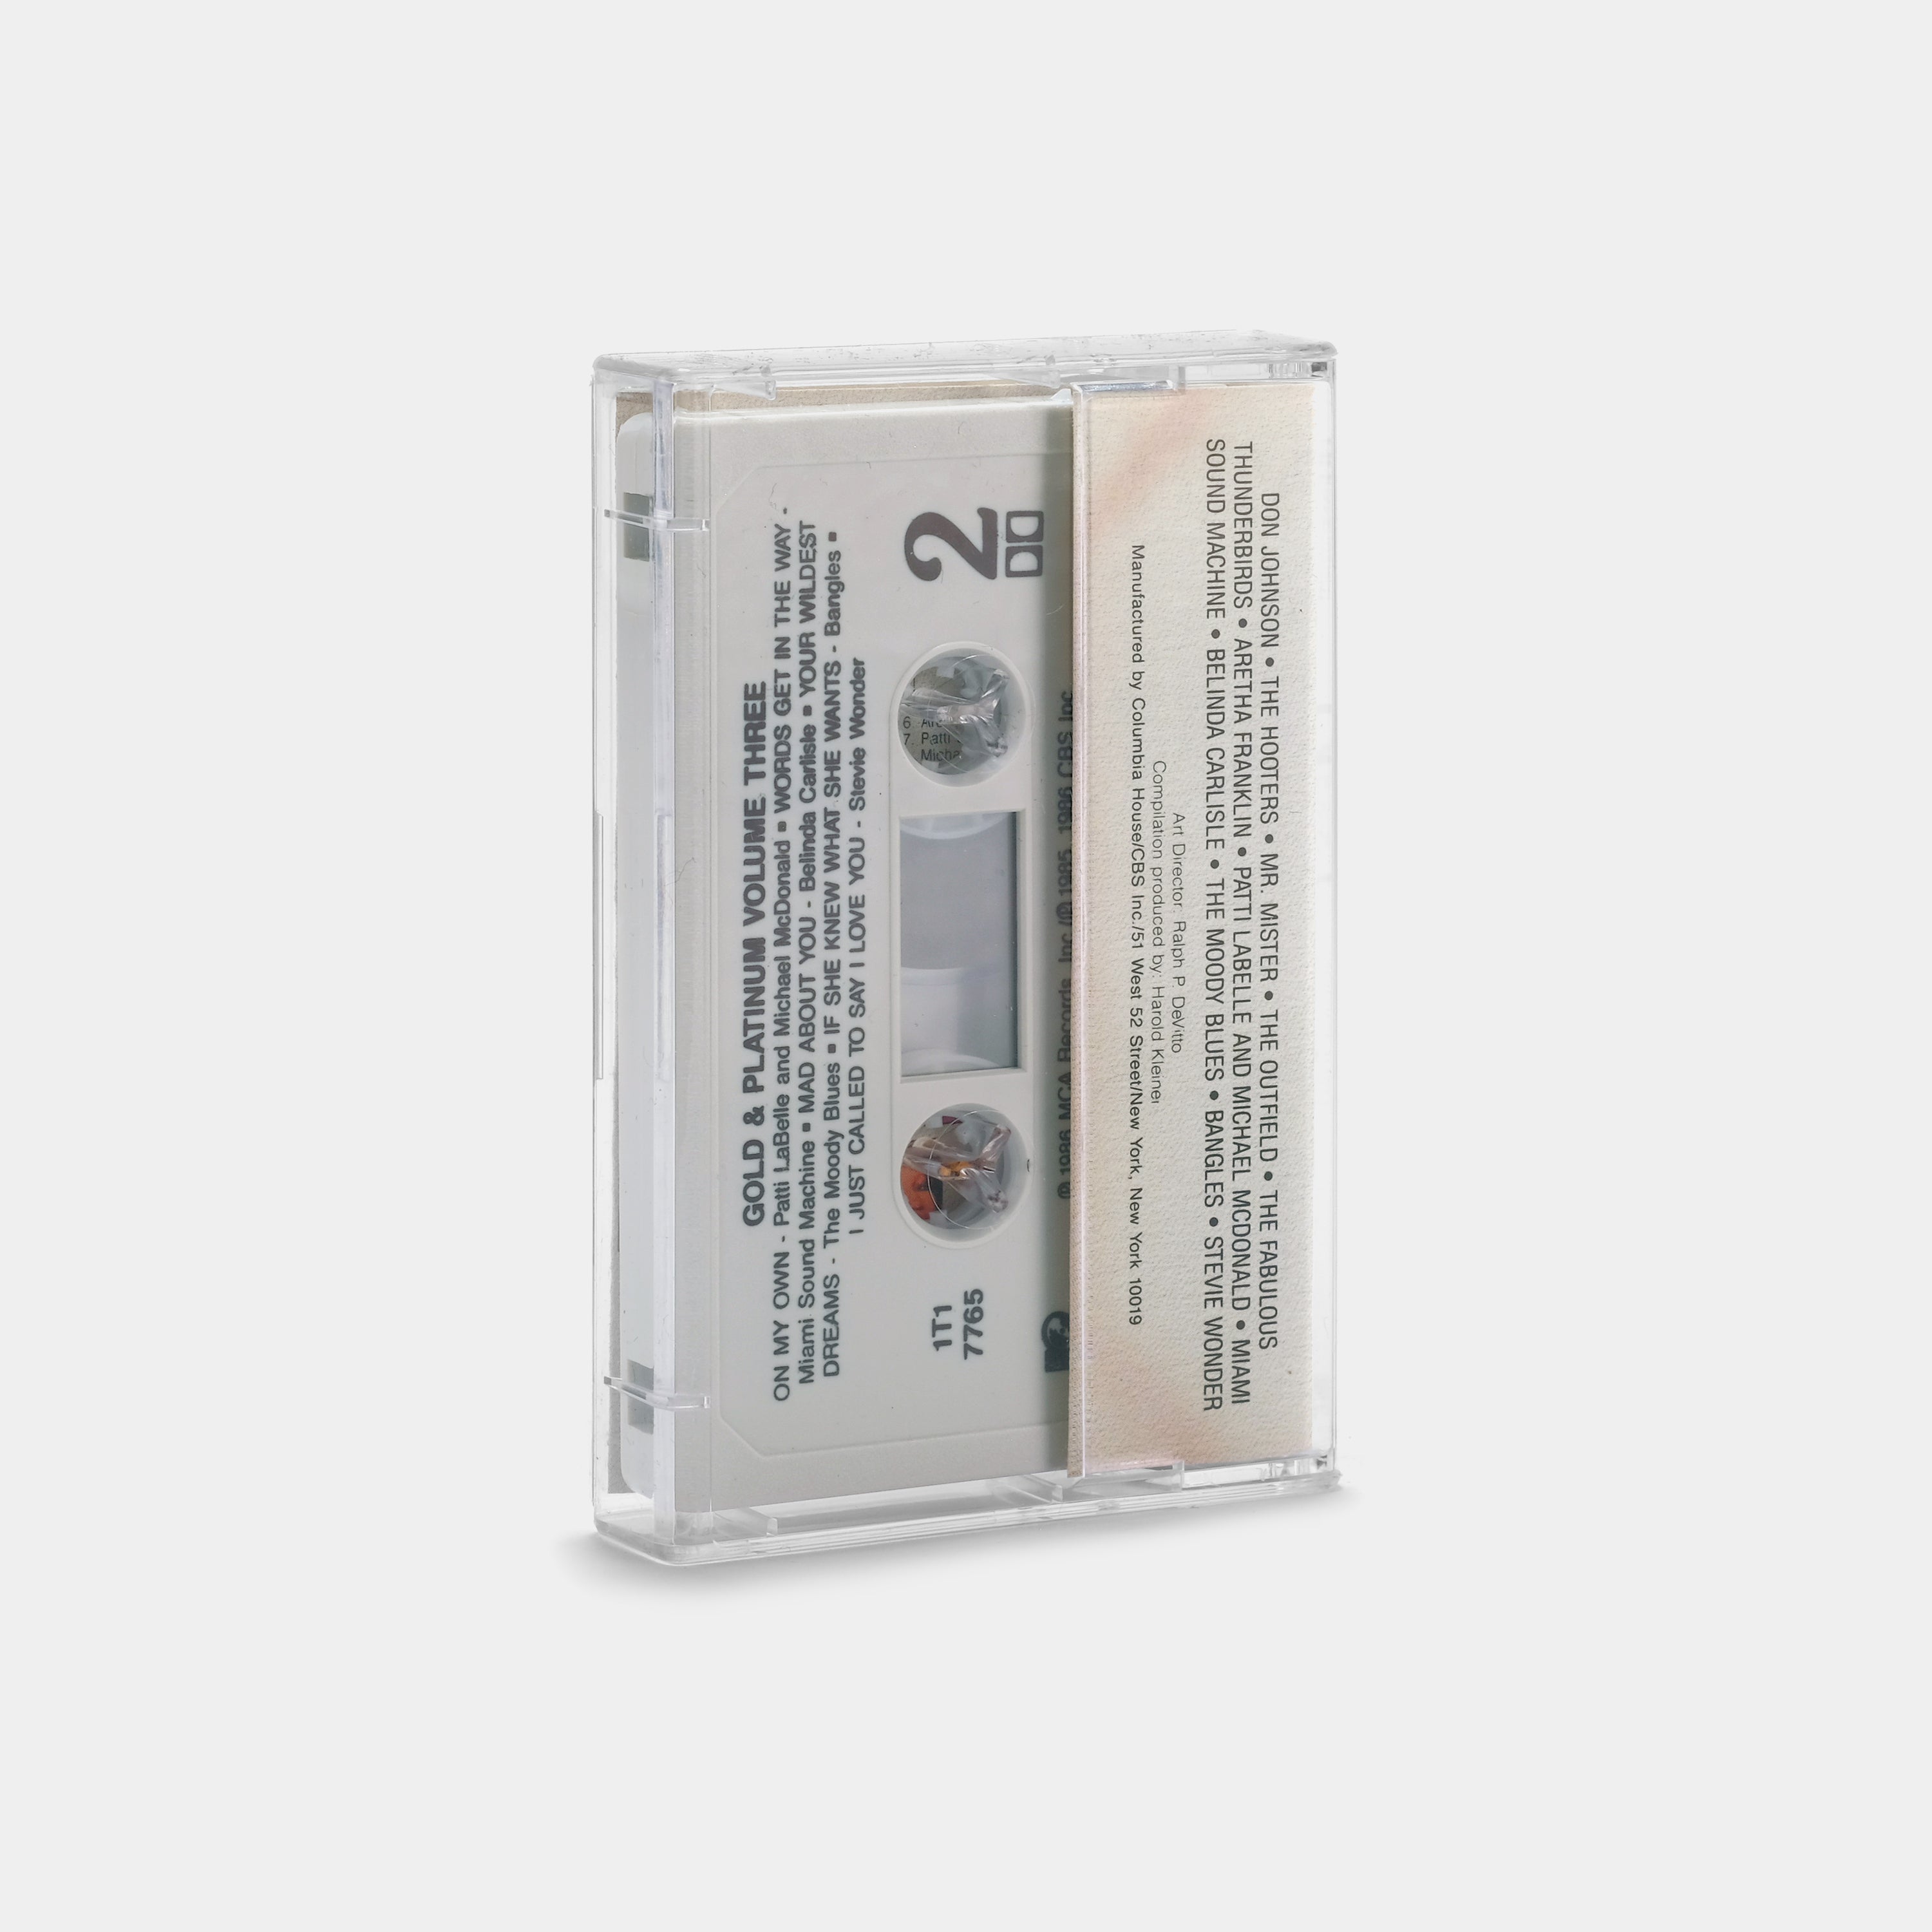 Gold & Platinum Volume Three Cassette Tape